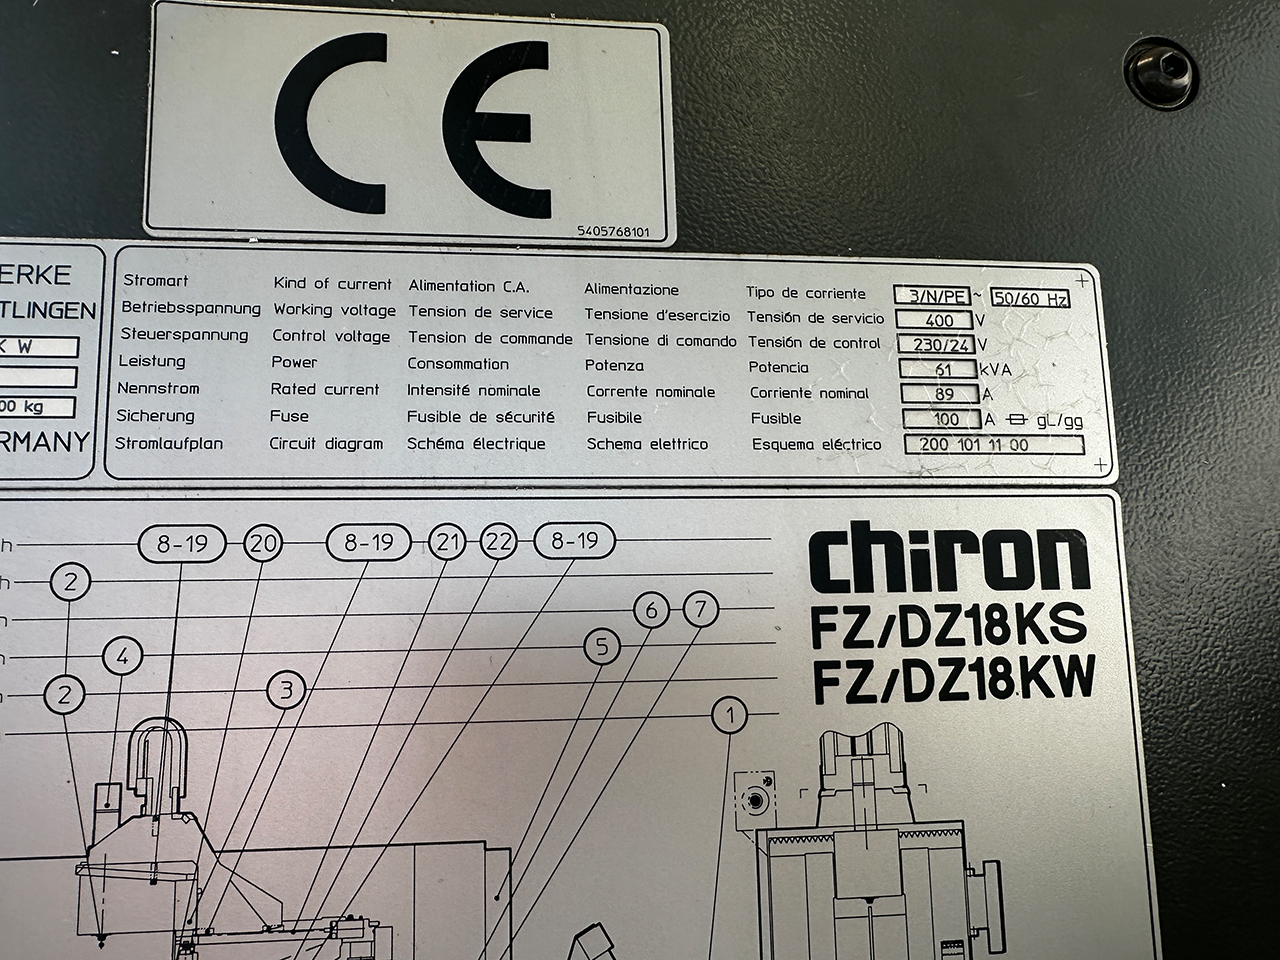 Chiron DZ18.2K W High Speed CNC Machining Centre BA2317, folosit